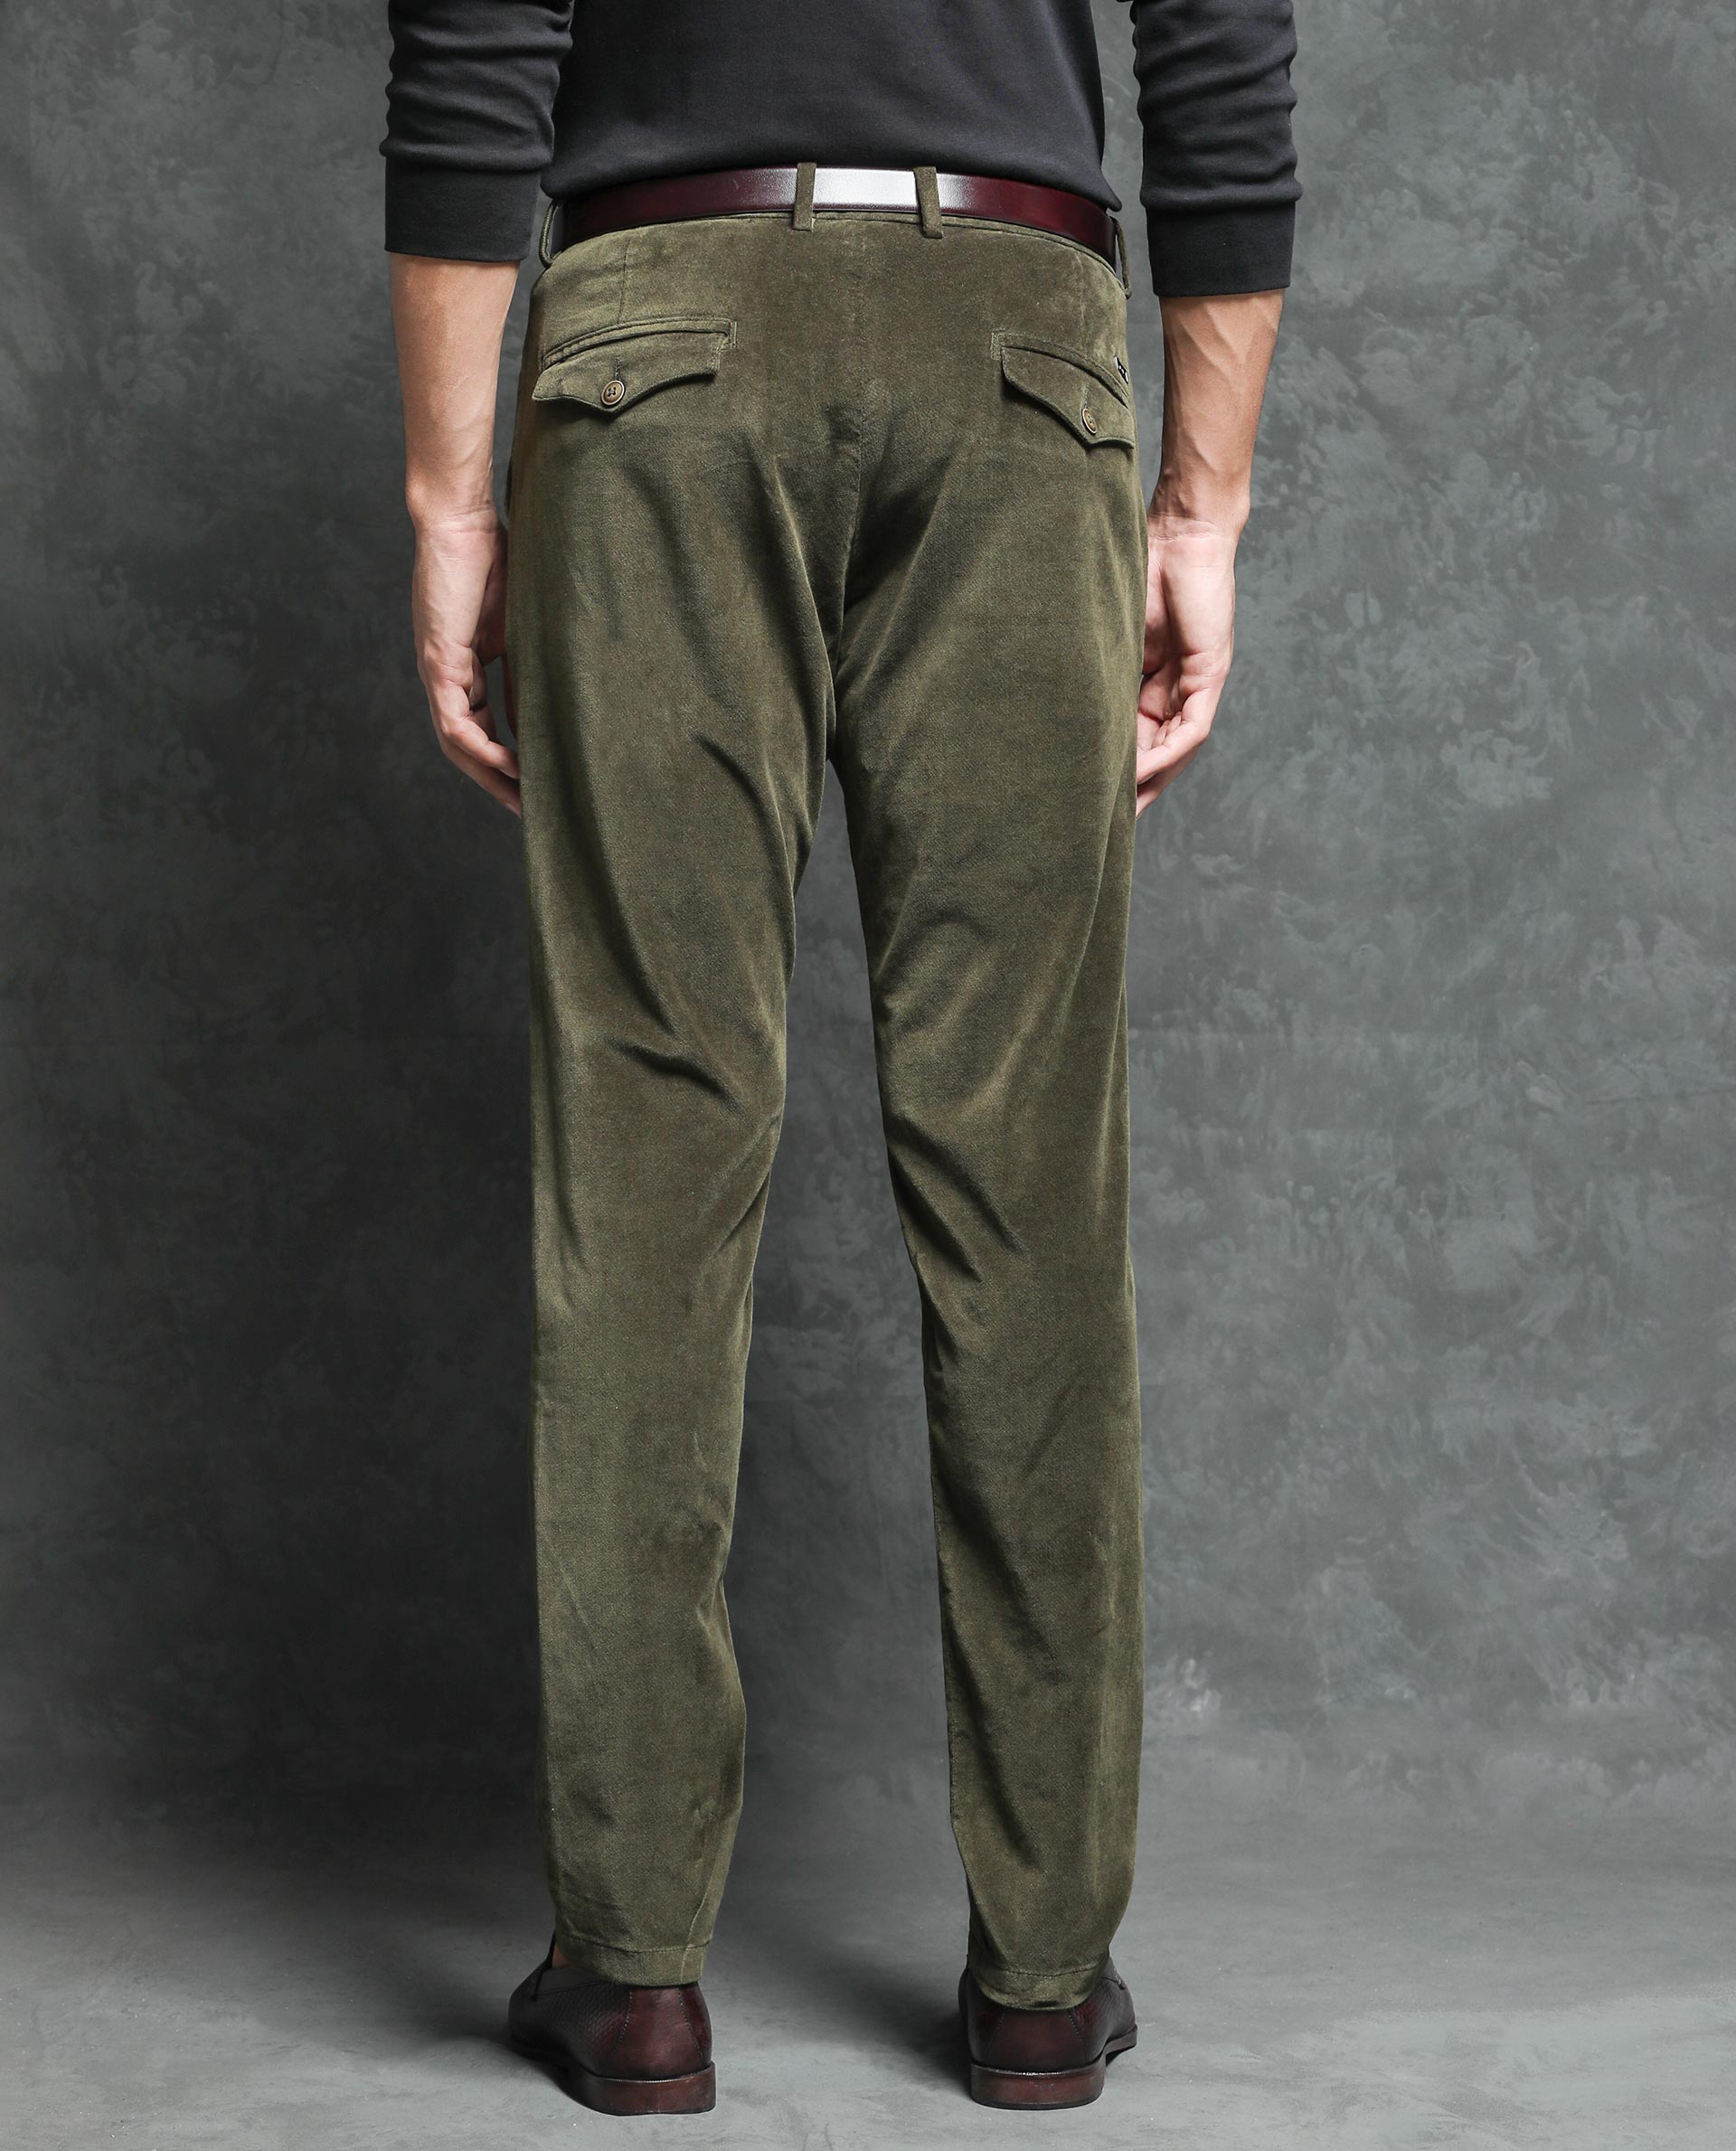 Polo Ralph Lauren mens velvet pants green slim fit 34/32 | eBay